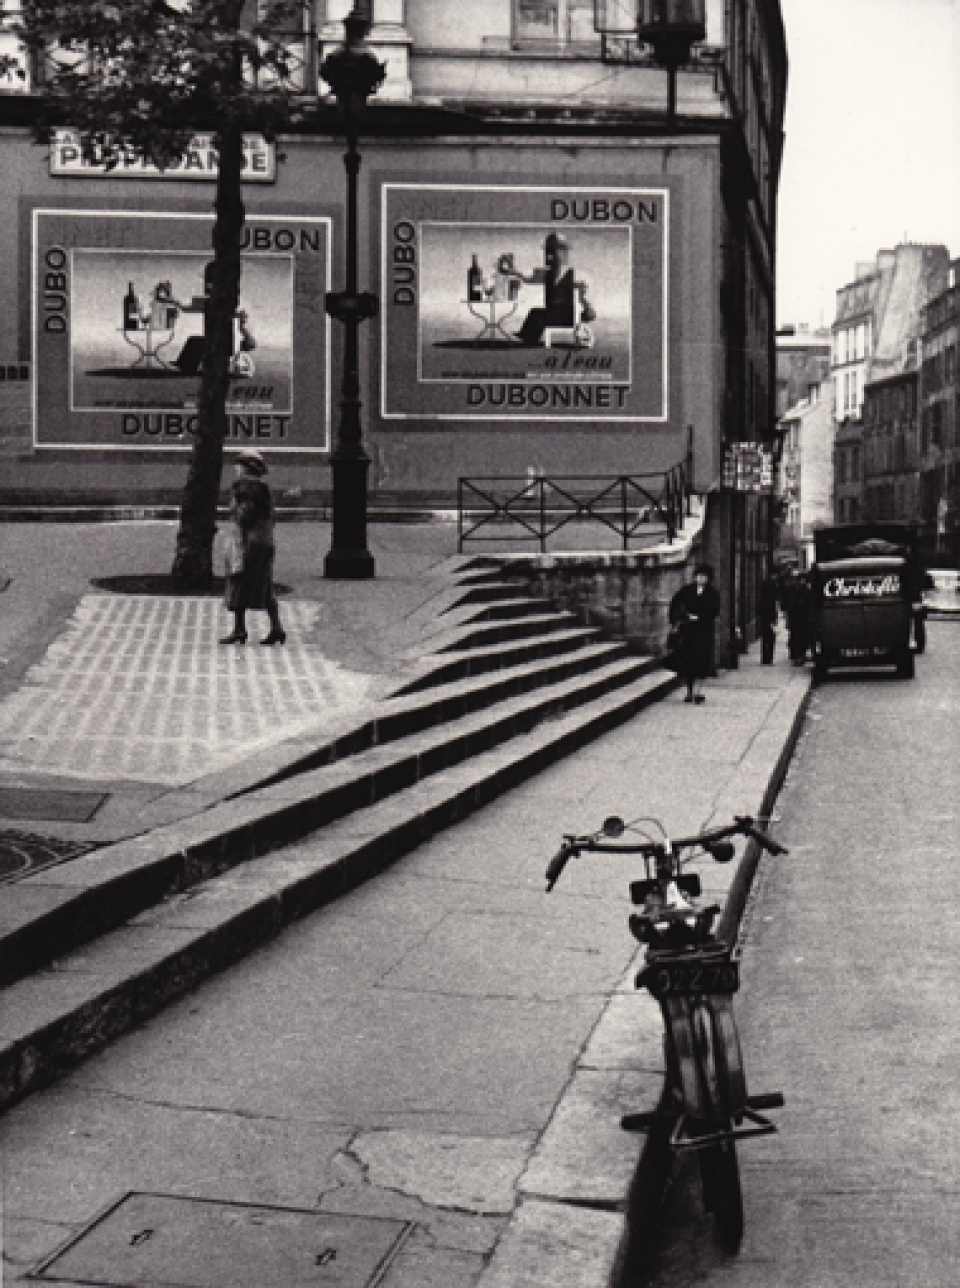 Andre Kertesz. Porte Saint Denis, Paris, 1934